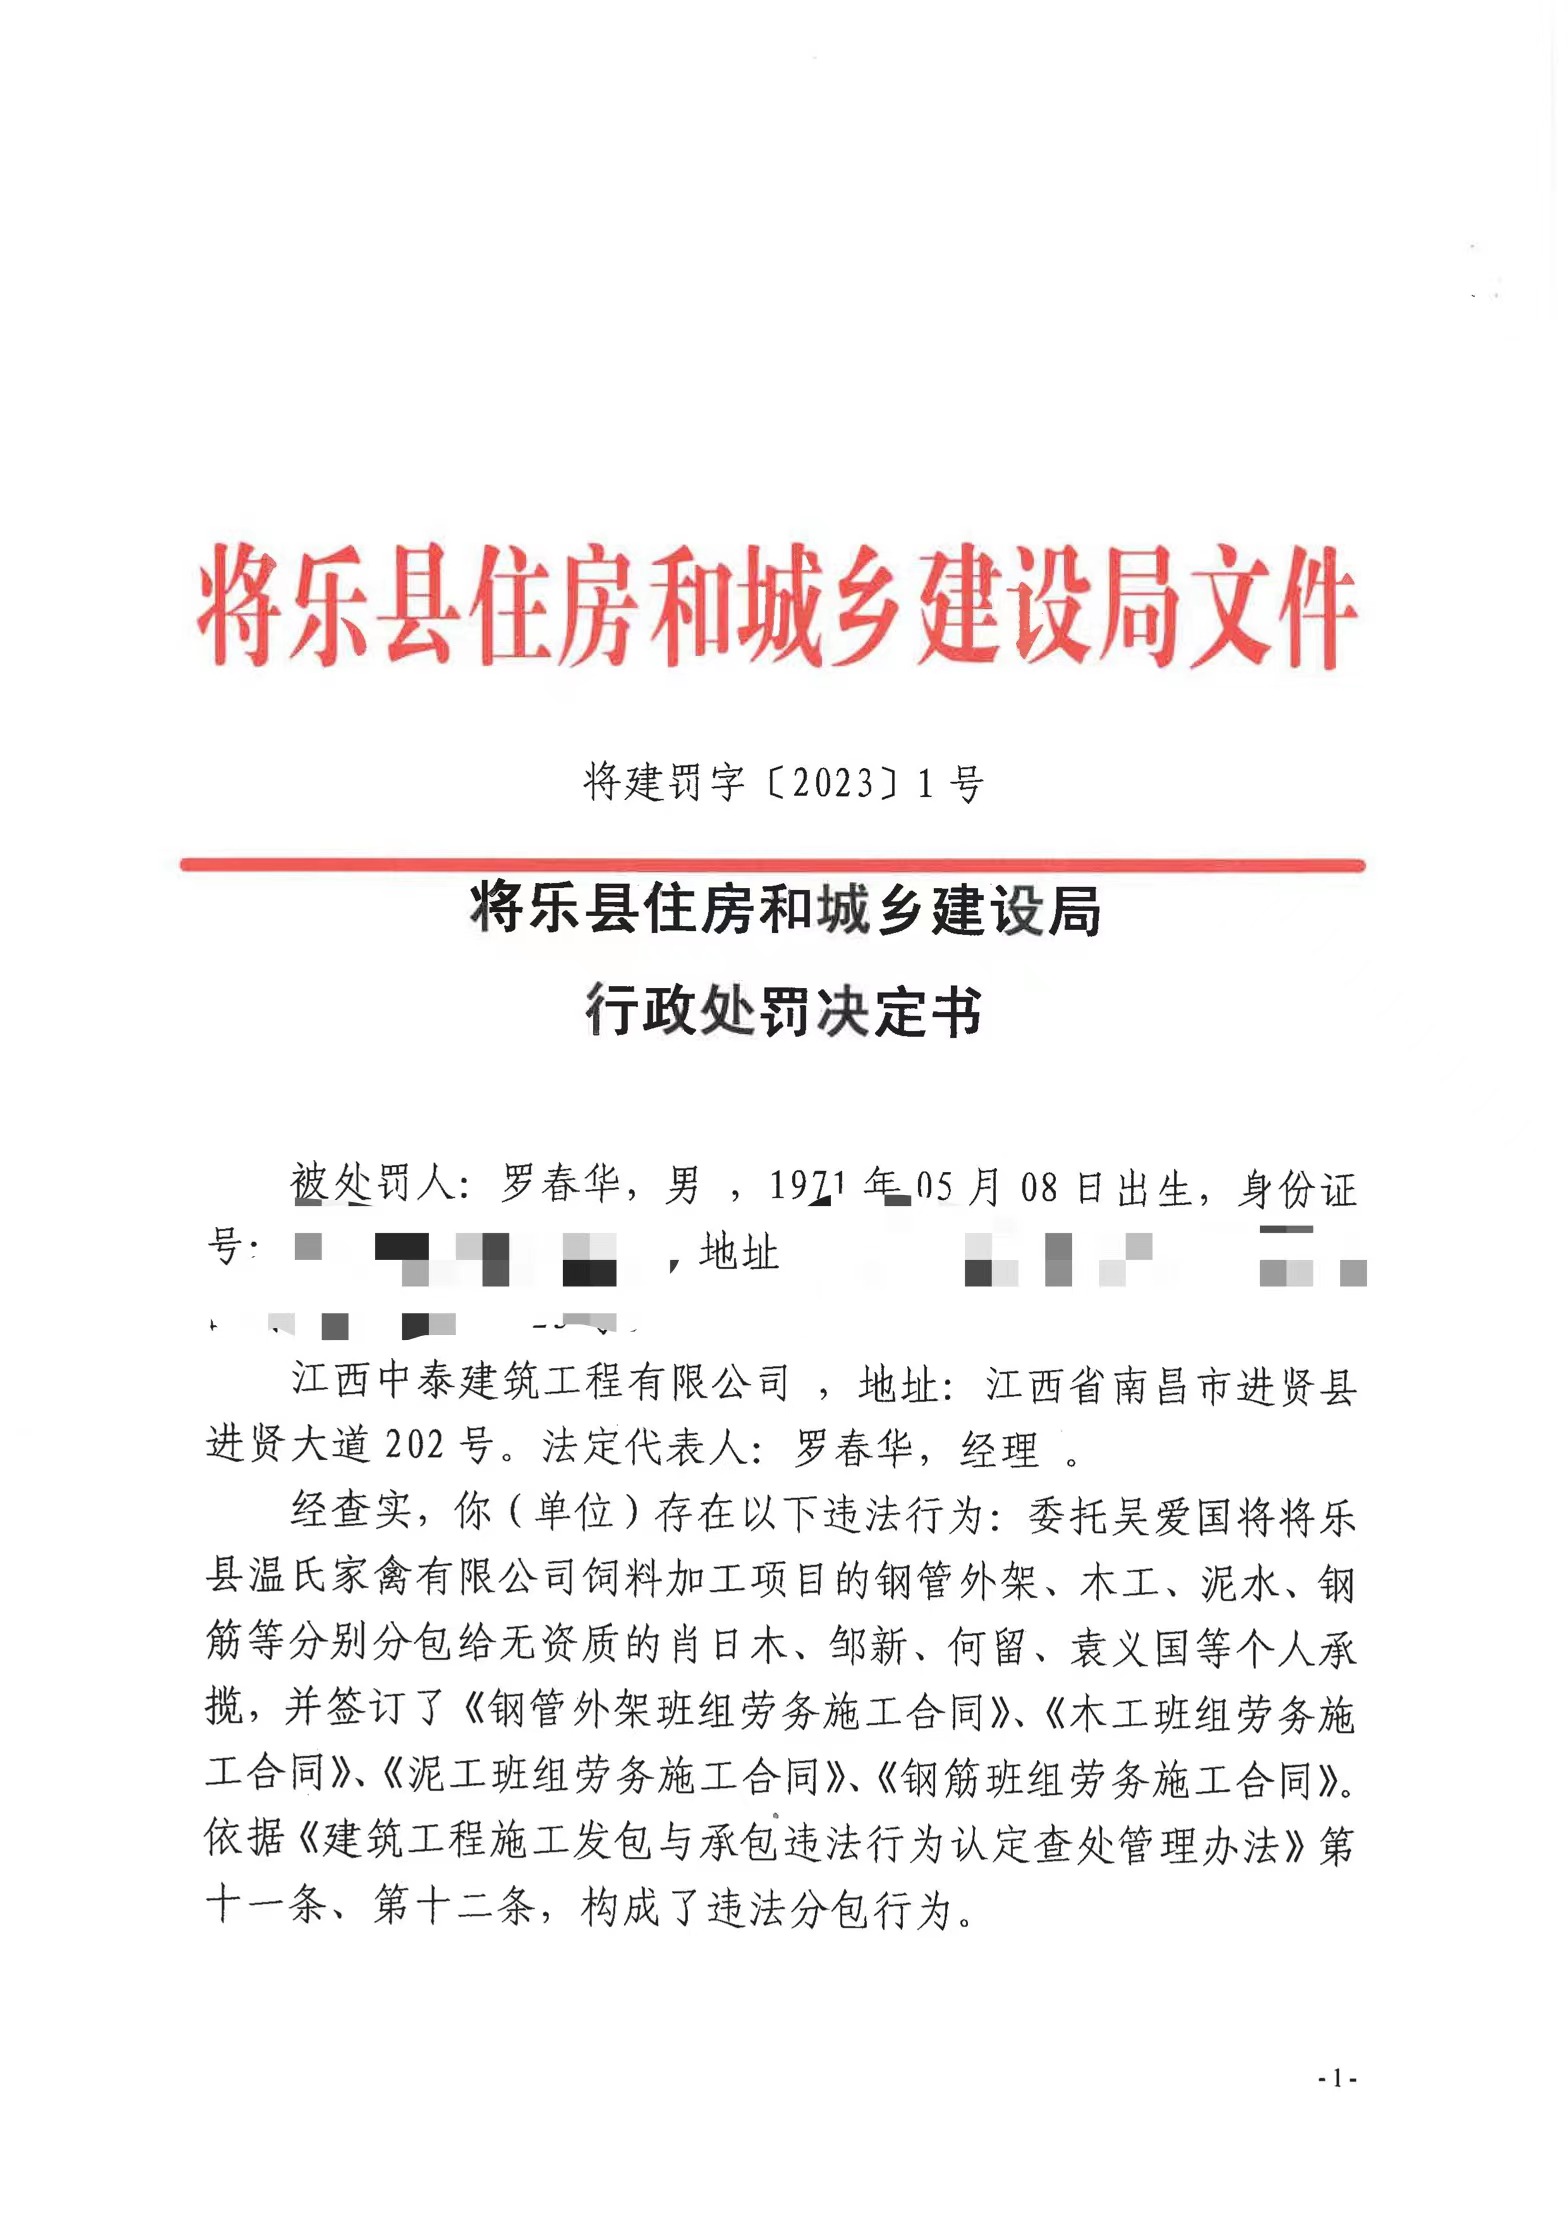 将乐县住建局对江西中泰建筑工程有限公司的行政处罚公示